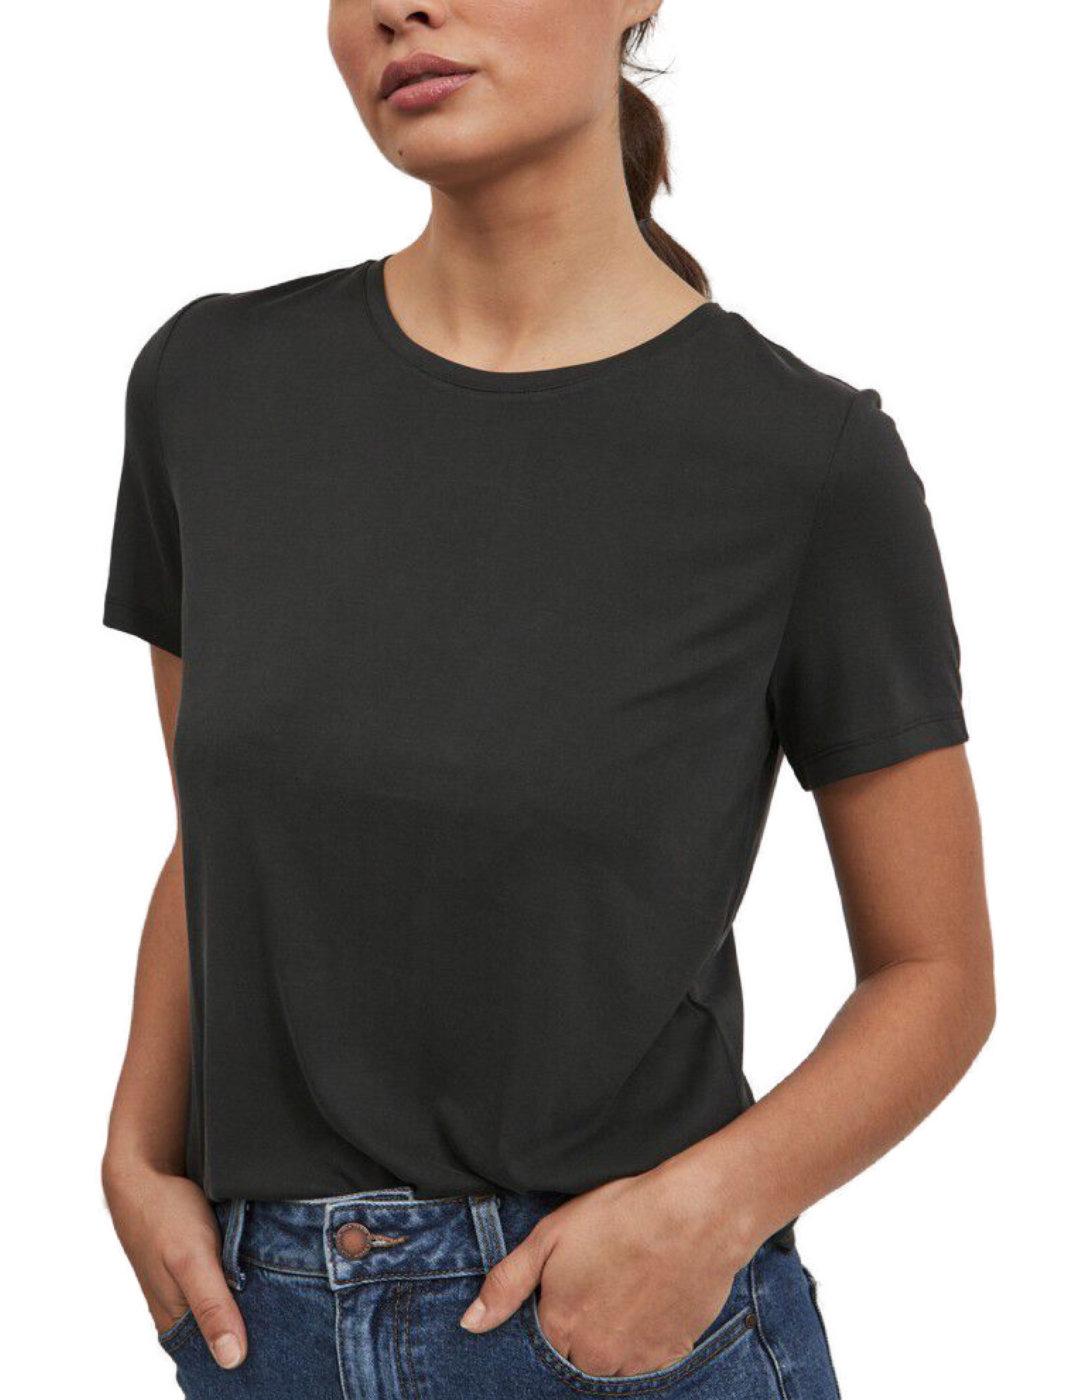 Camiseta Vila de manga corta y cuello redondo negra de mujer